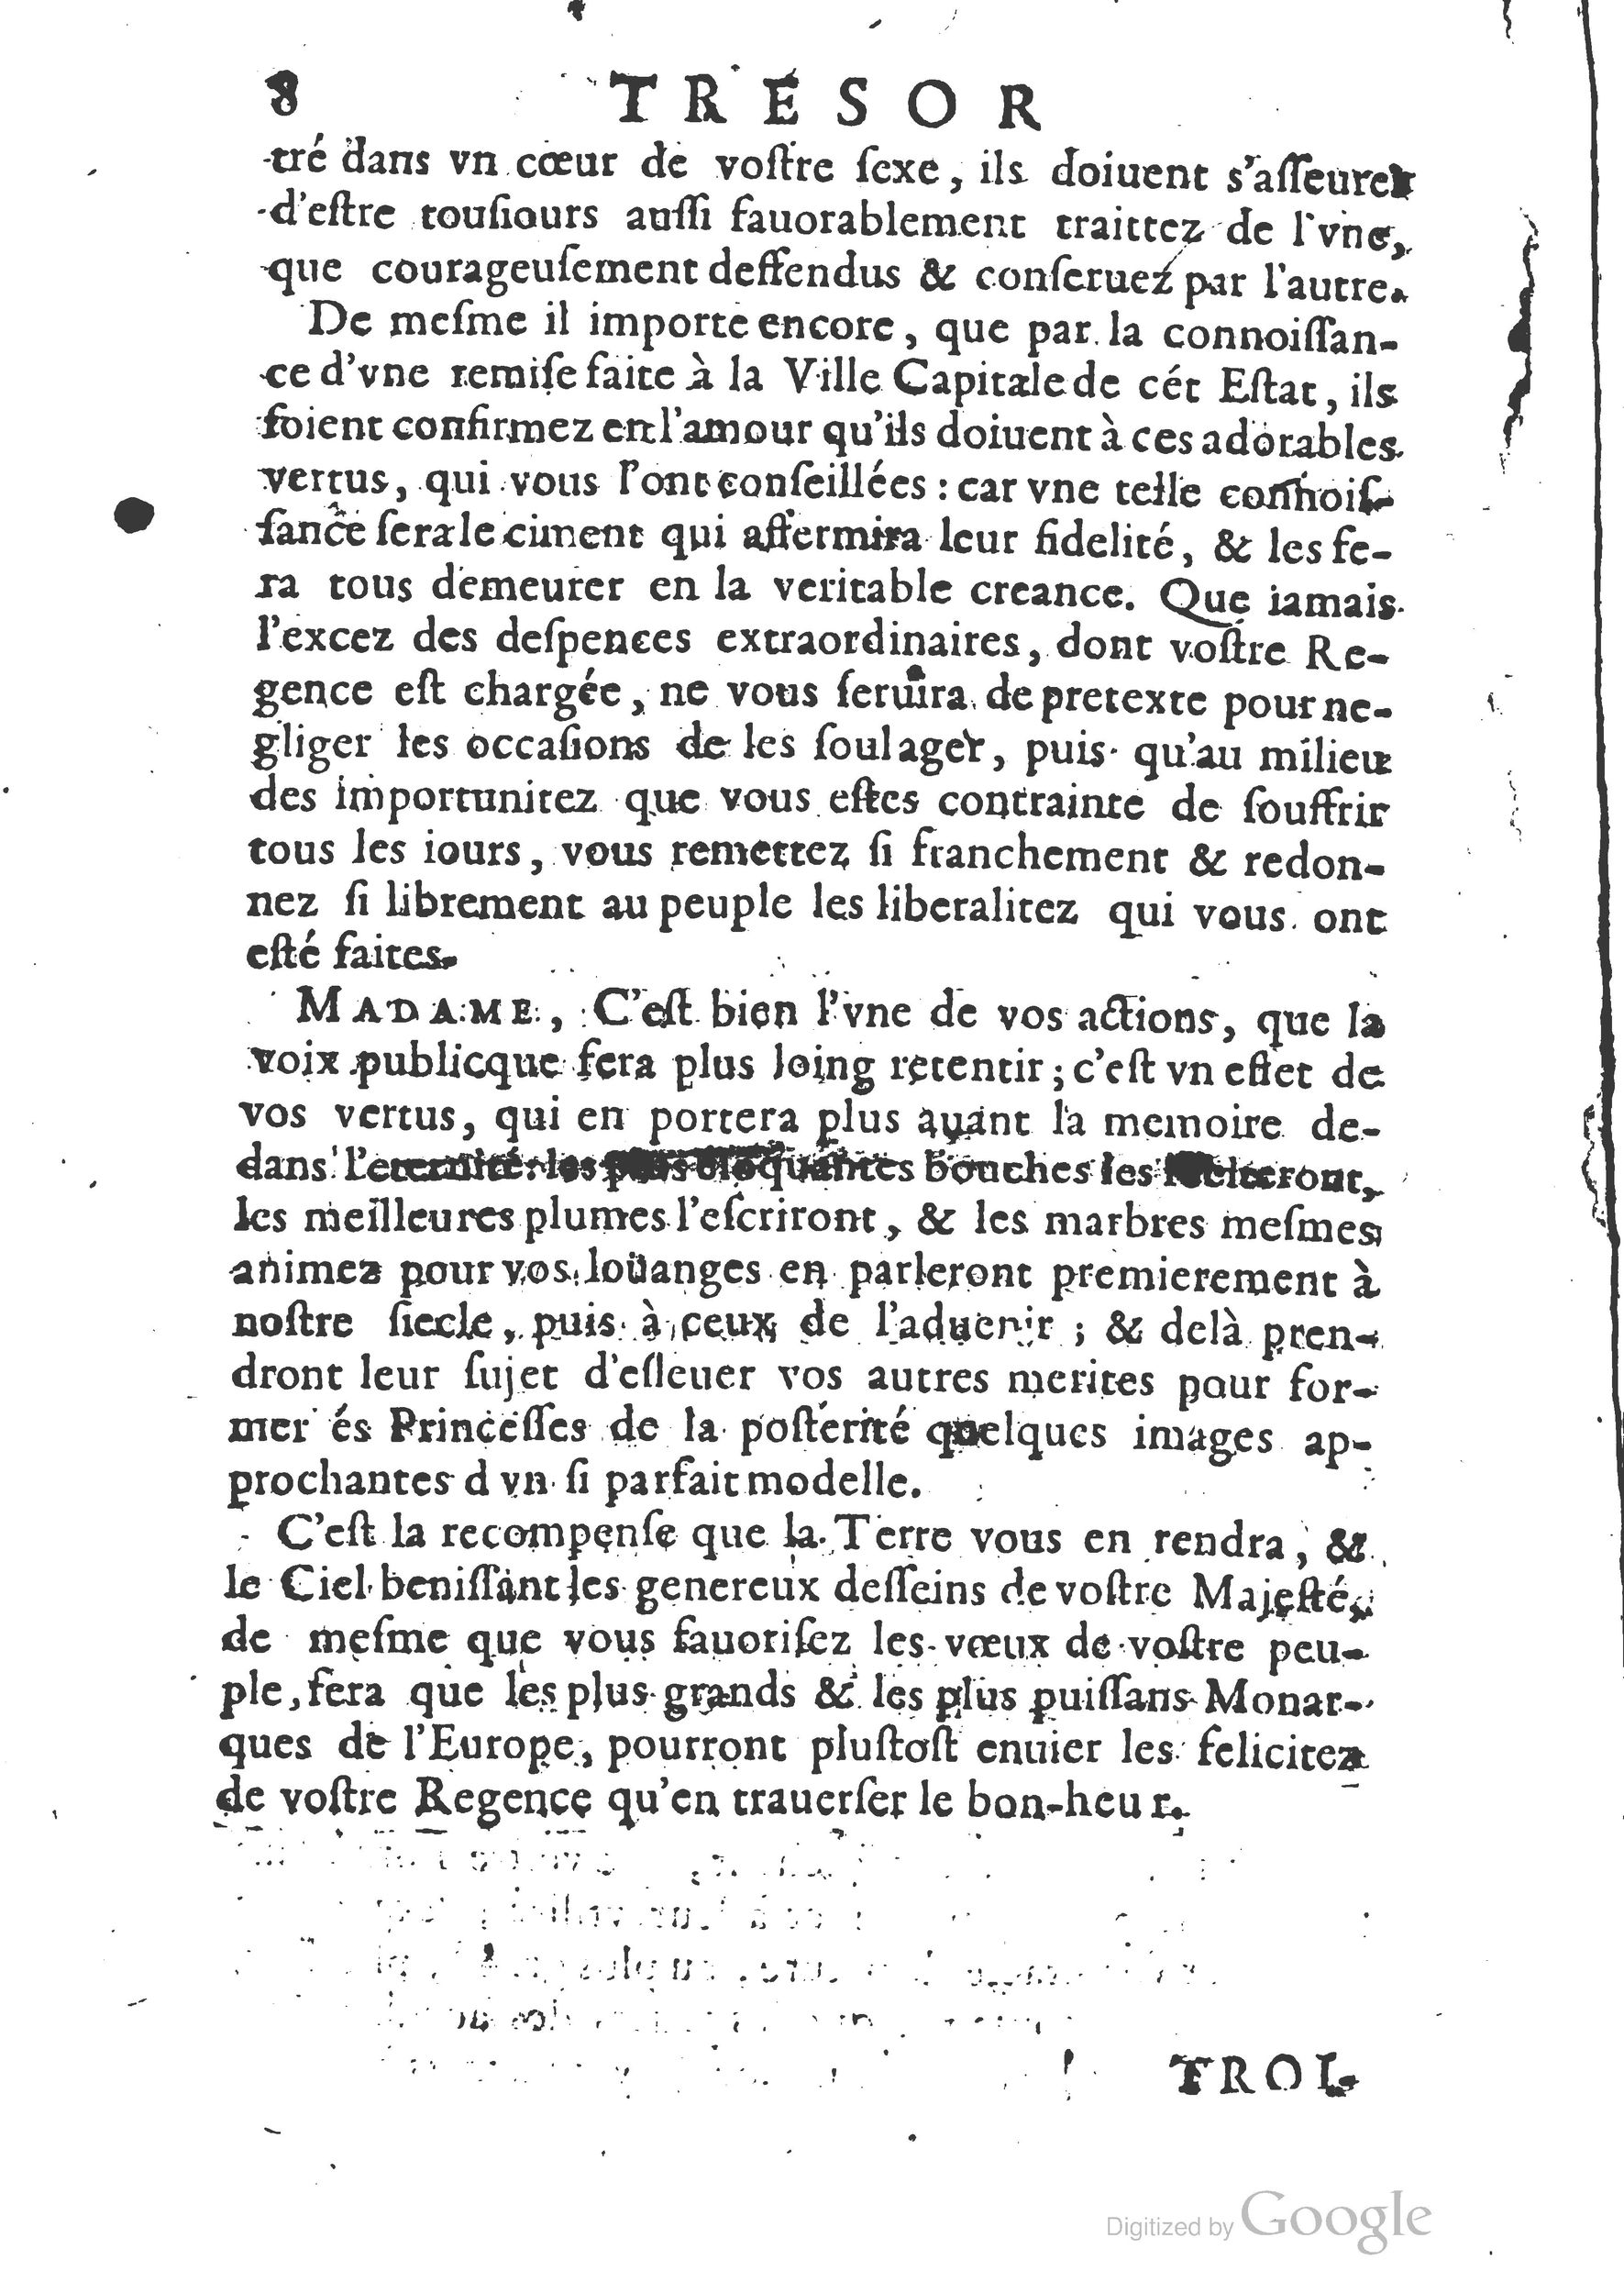 1654 Trésor des harangues, remontrances et oraisons funèbres Robin_BM Lyon_Page_027.jpg